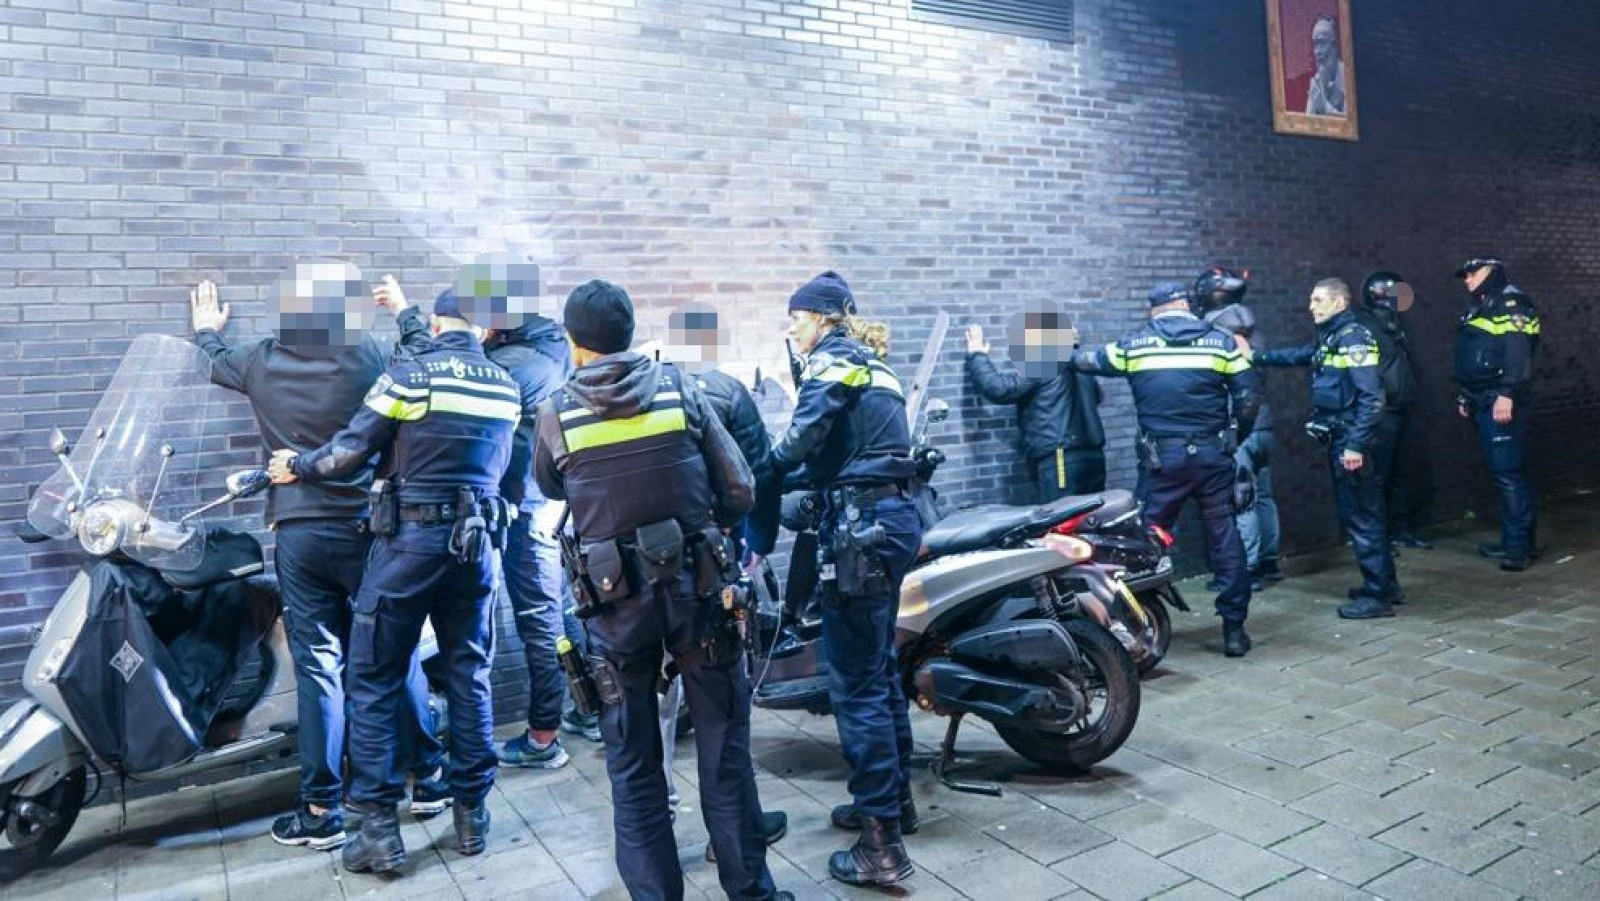 Politie in actie in Slotermeer